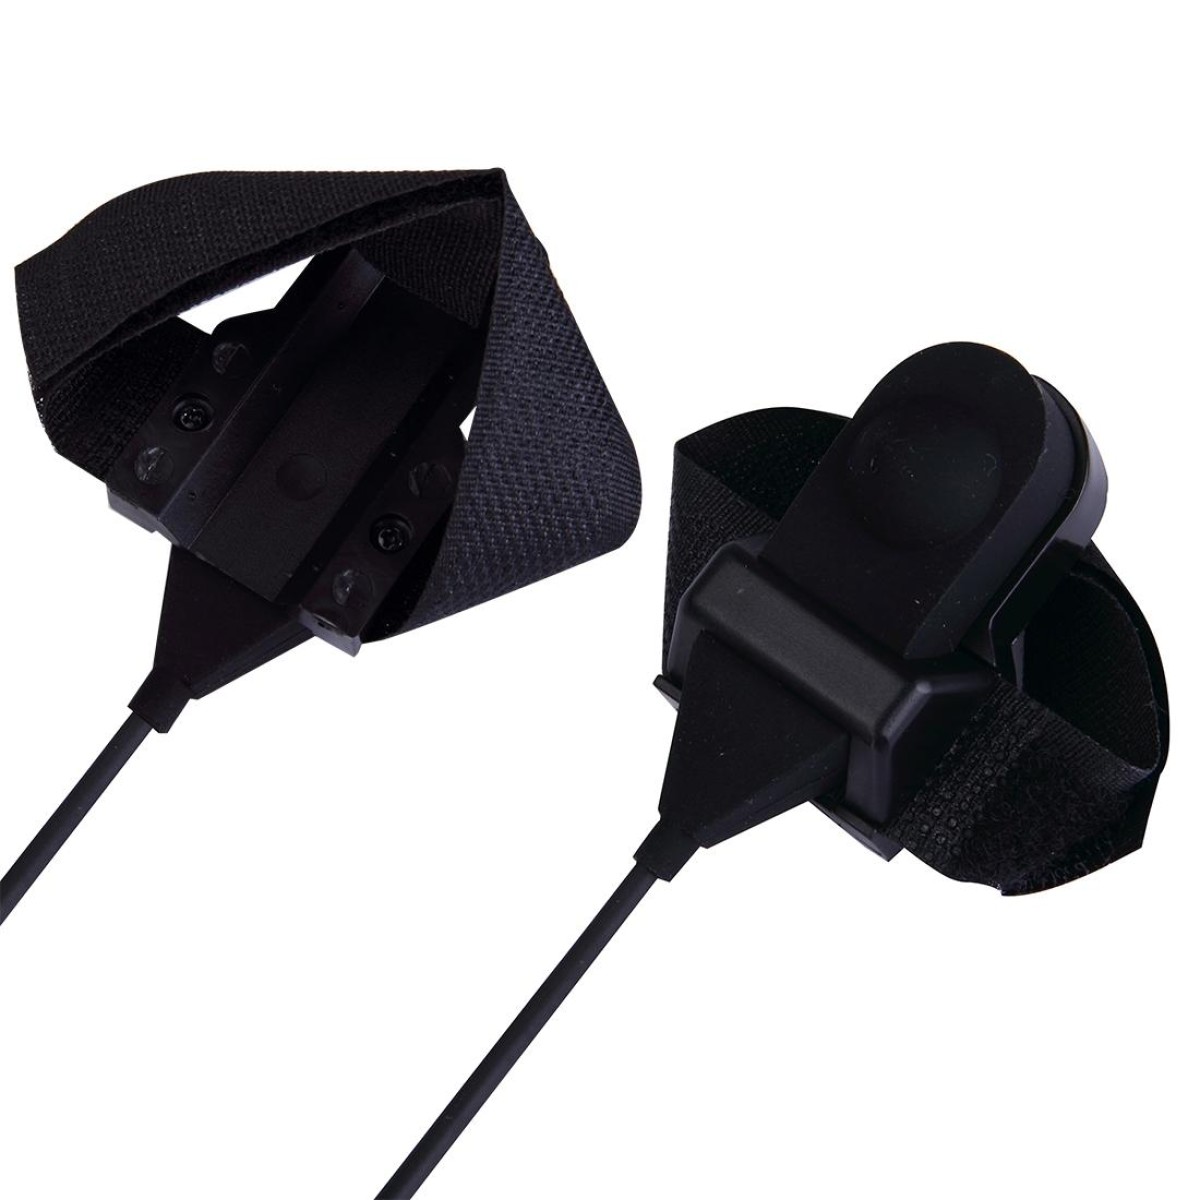 2 Pin PTT Adjustable Volume Motorcycle Helmet Headset Microphone for BAOFENG Radio Walkie Talkie